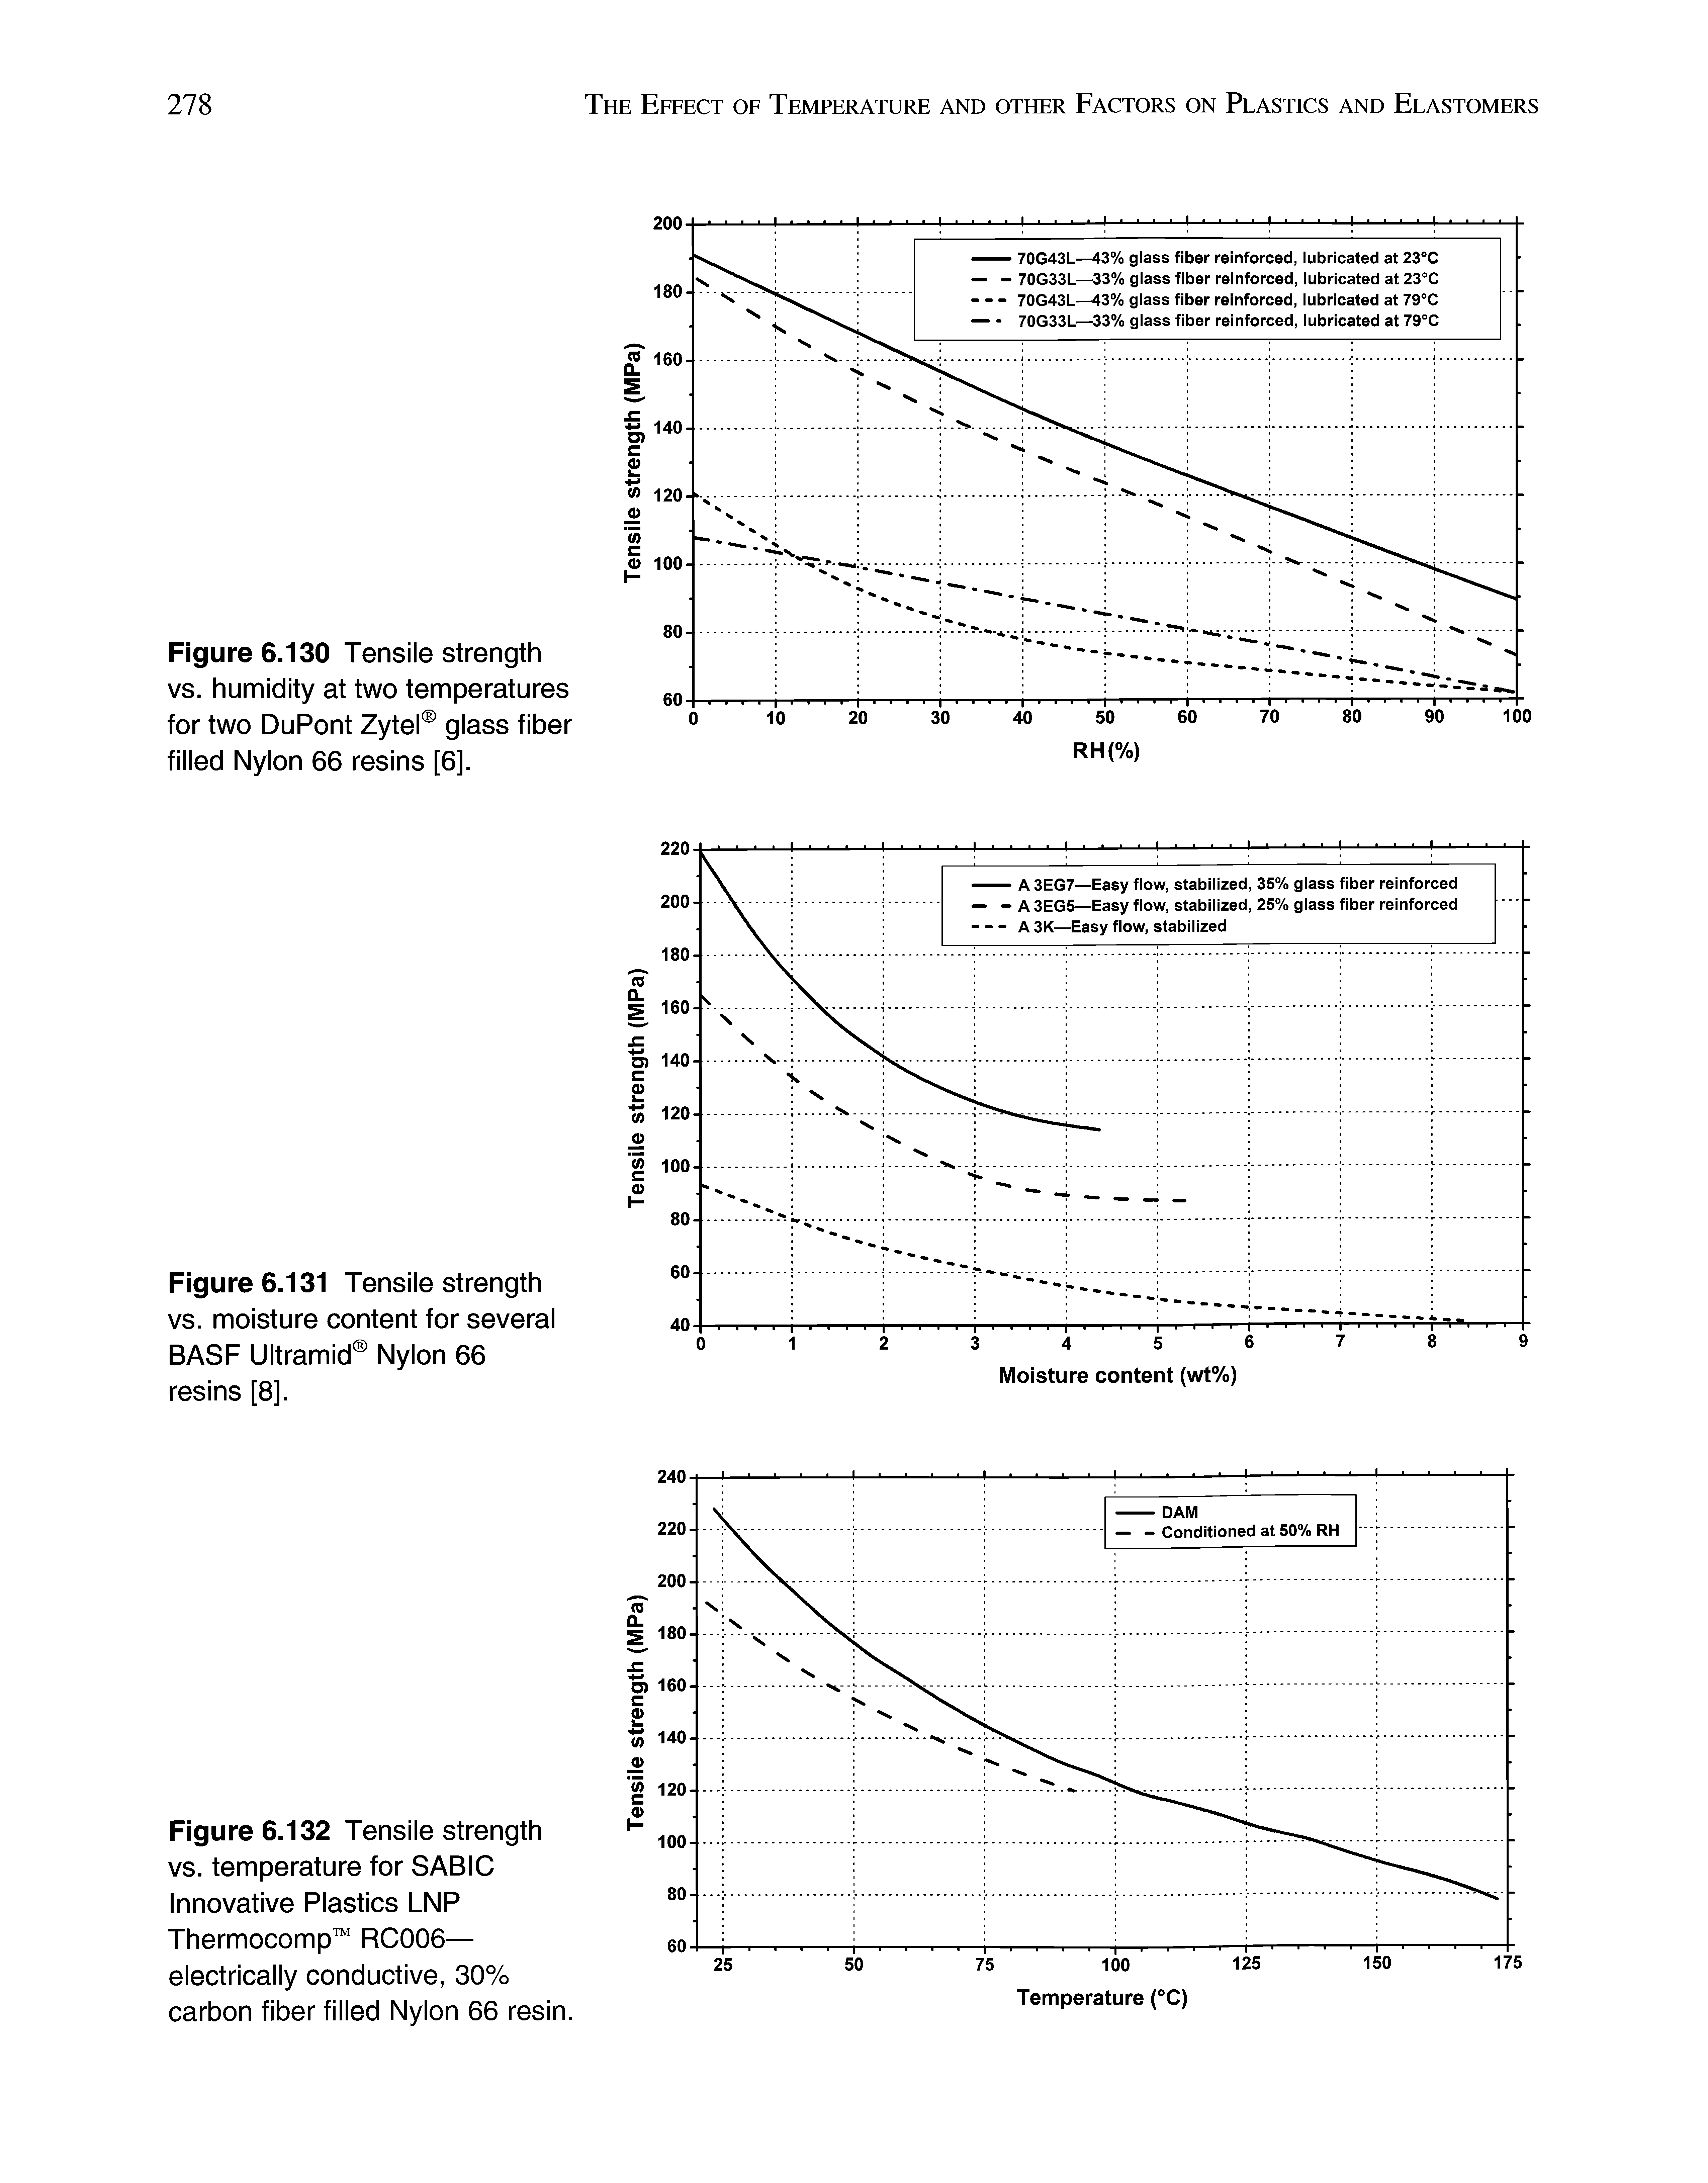 Figure 6.131 Tensile strength vs. moisture content for several BASF Ultramid Nylon 66 resins [8].